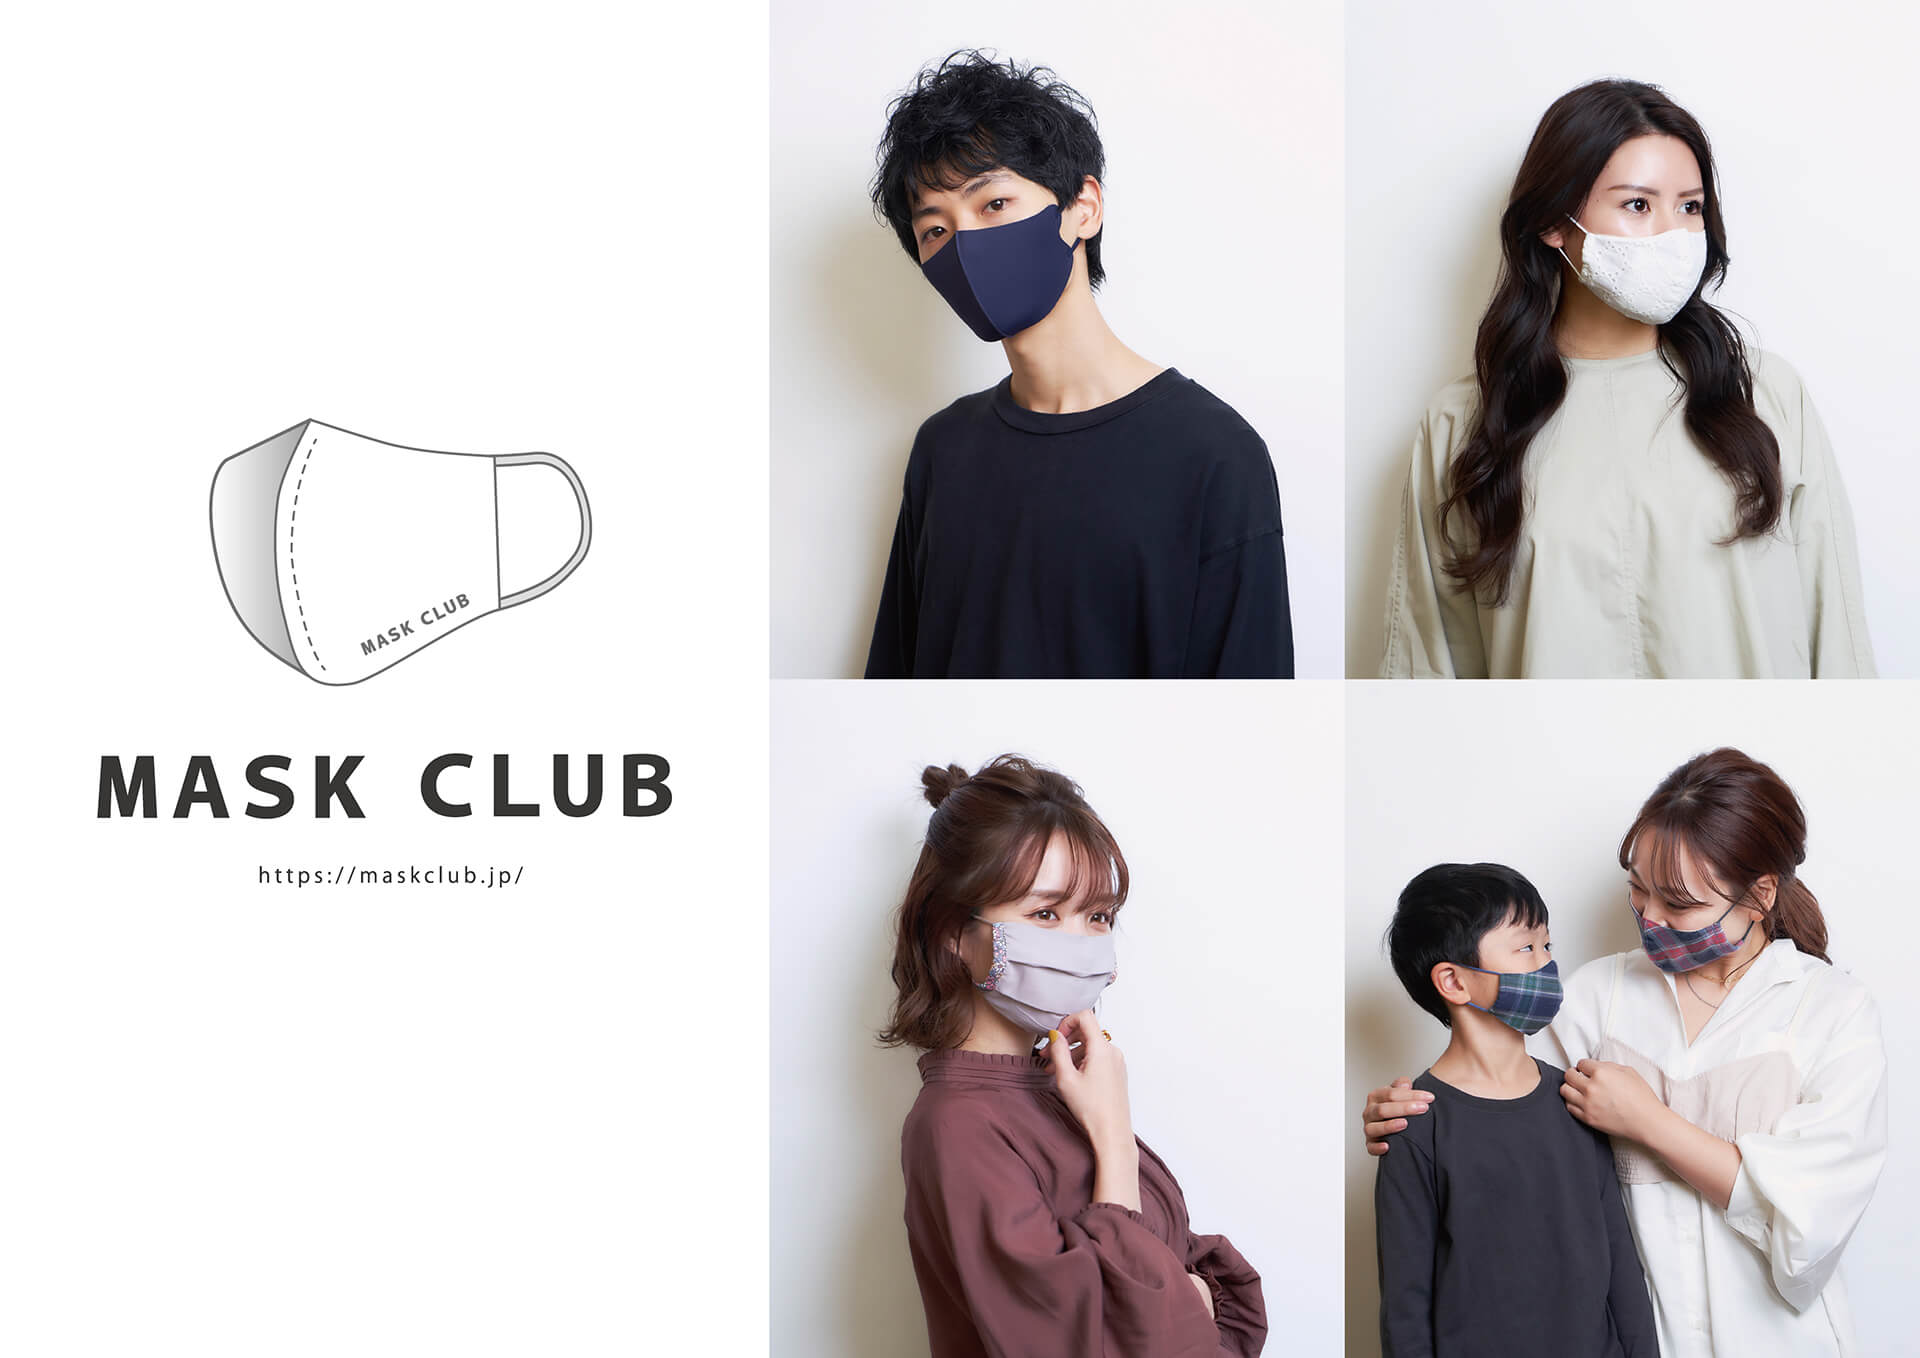 「MASK CLUB」渋谷店 マスク福袋